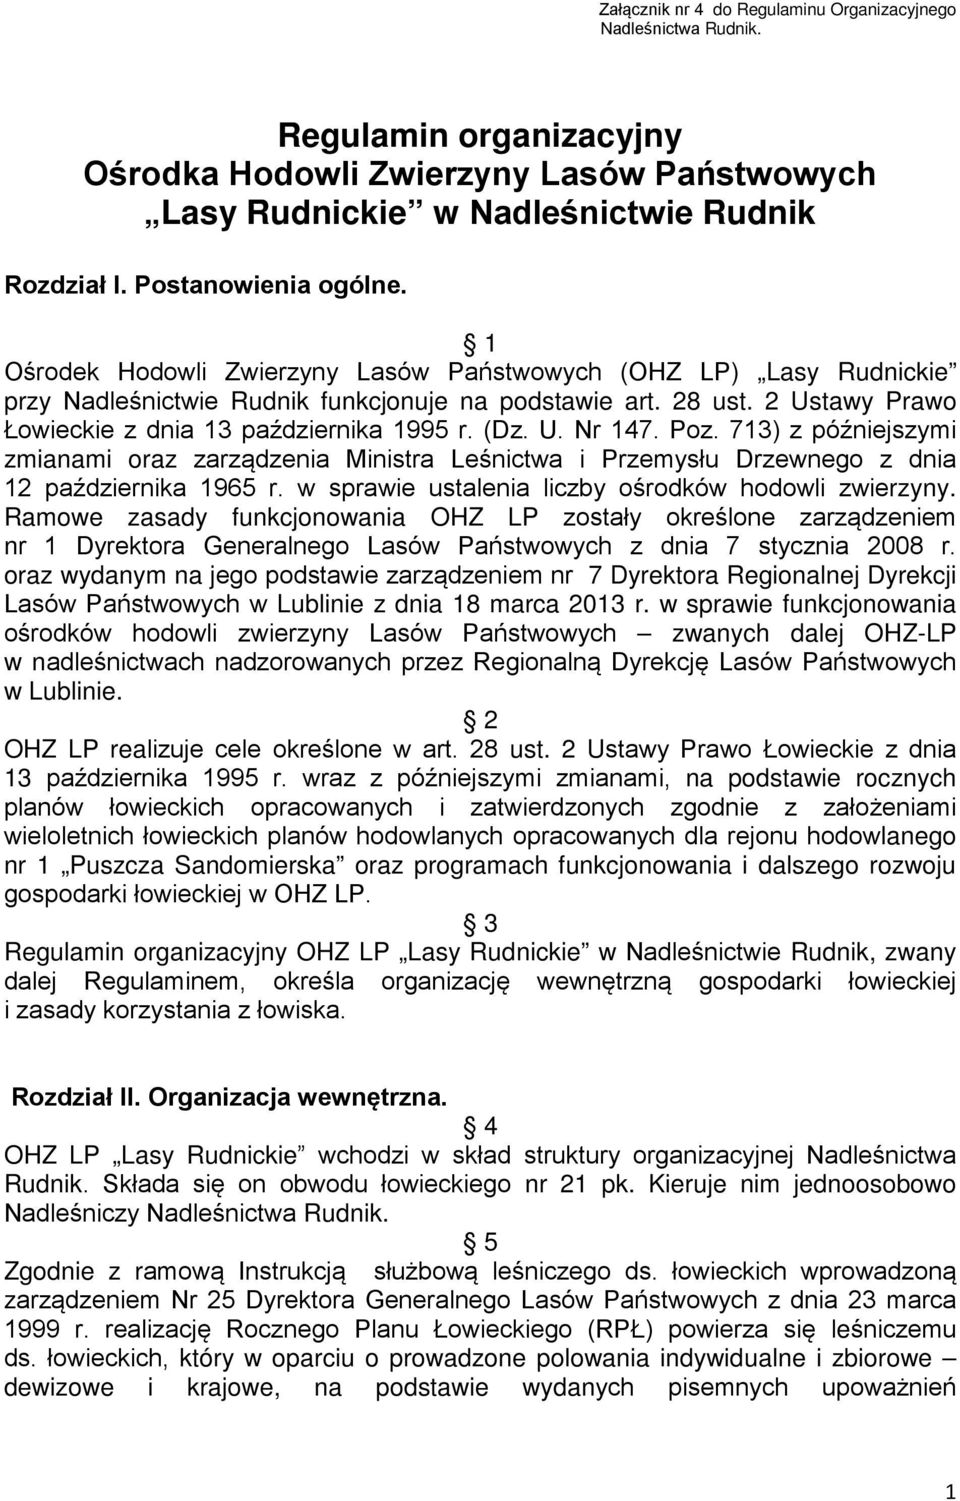 2 Ustawy Prawo Łowieckie z dnia 13 października 1995 r. (Dz. U. Nr 147. Poz. 713) z późniejszymi zmianami oraz zarządzenia Ministra Leśnictwa i Przemysłu Drzewnego z dnia 12 października 1965 r.